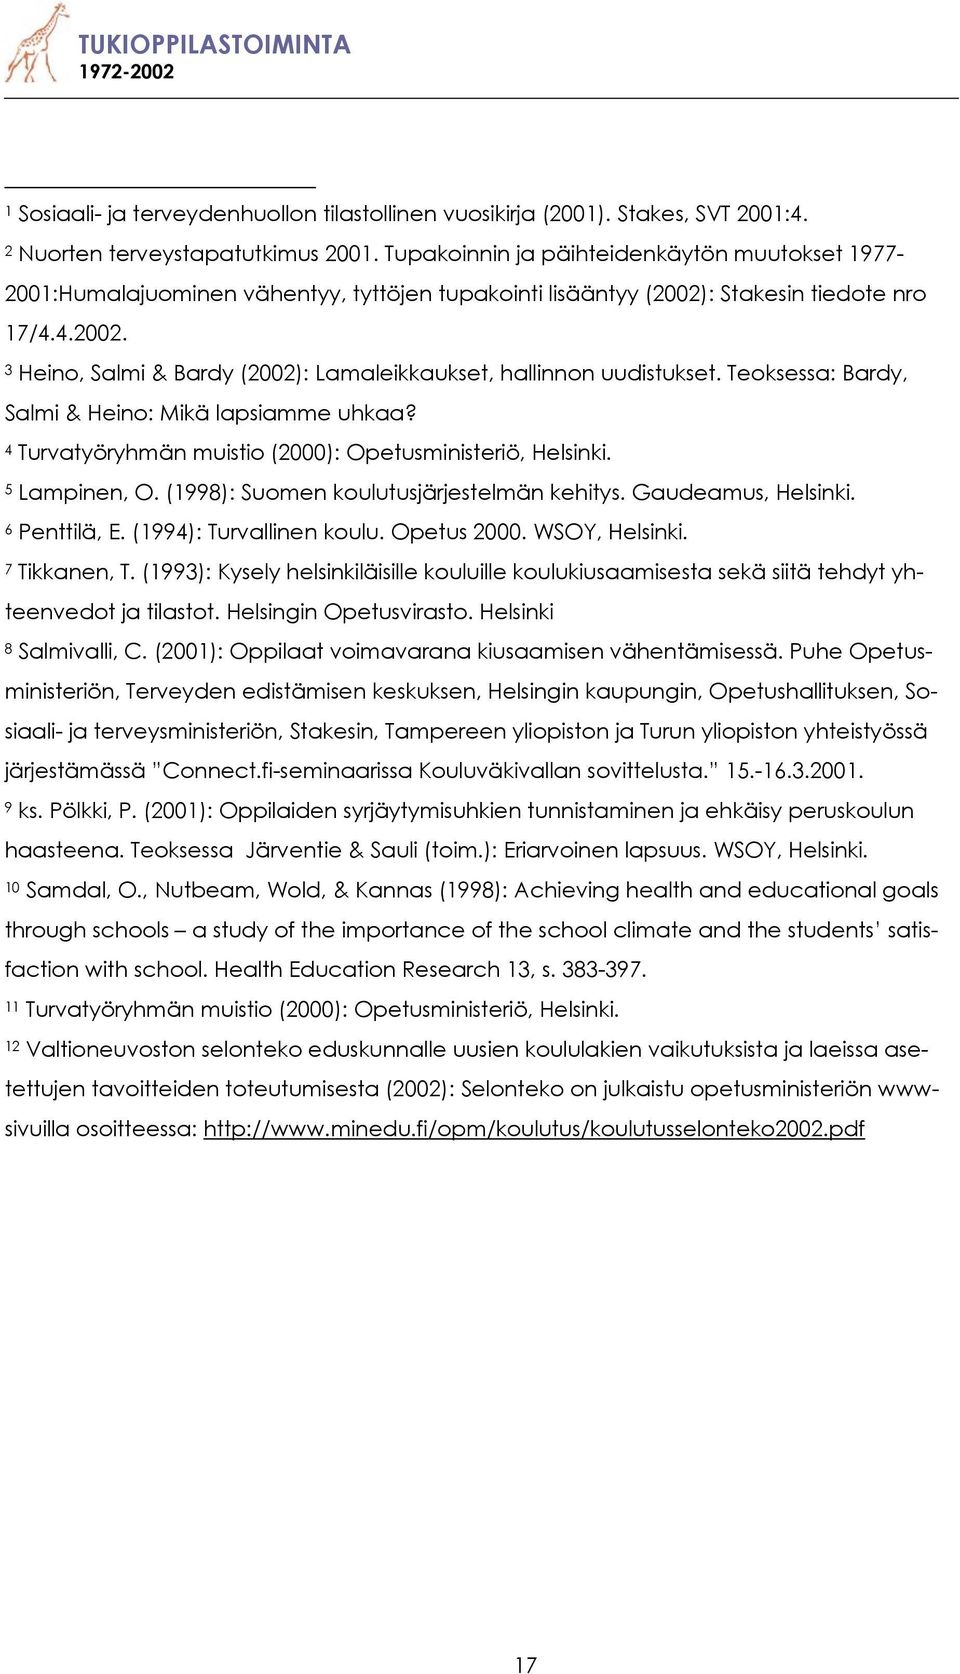 Teoksessa: Bardy, Salmi & Heino: Mikä lapsiamme uhkaa? 4 Turvatyöryhmän muistio (2000): Opetusministeriö, Helsinki. 5 Lampinen, O. (1998): Suomen koulutusjärjestelmän kehitys. Gaudeamus, Helsinki.